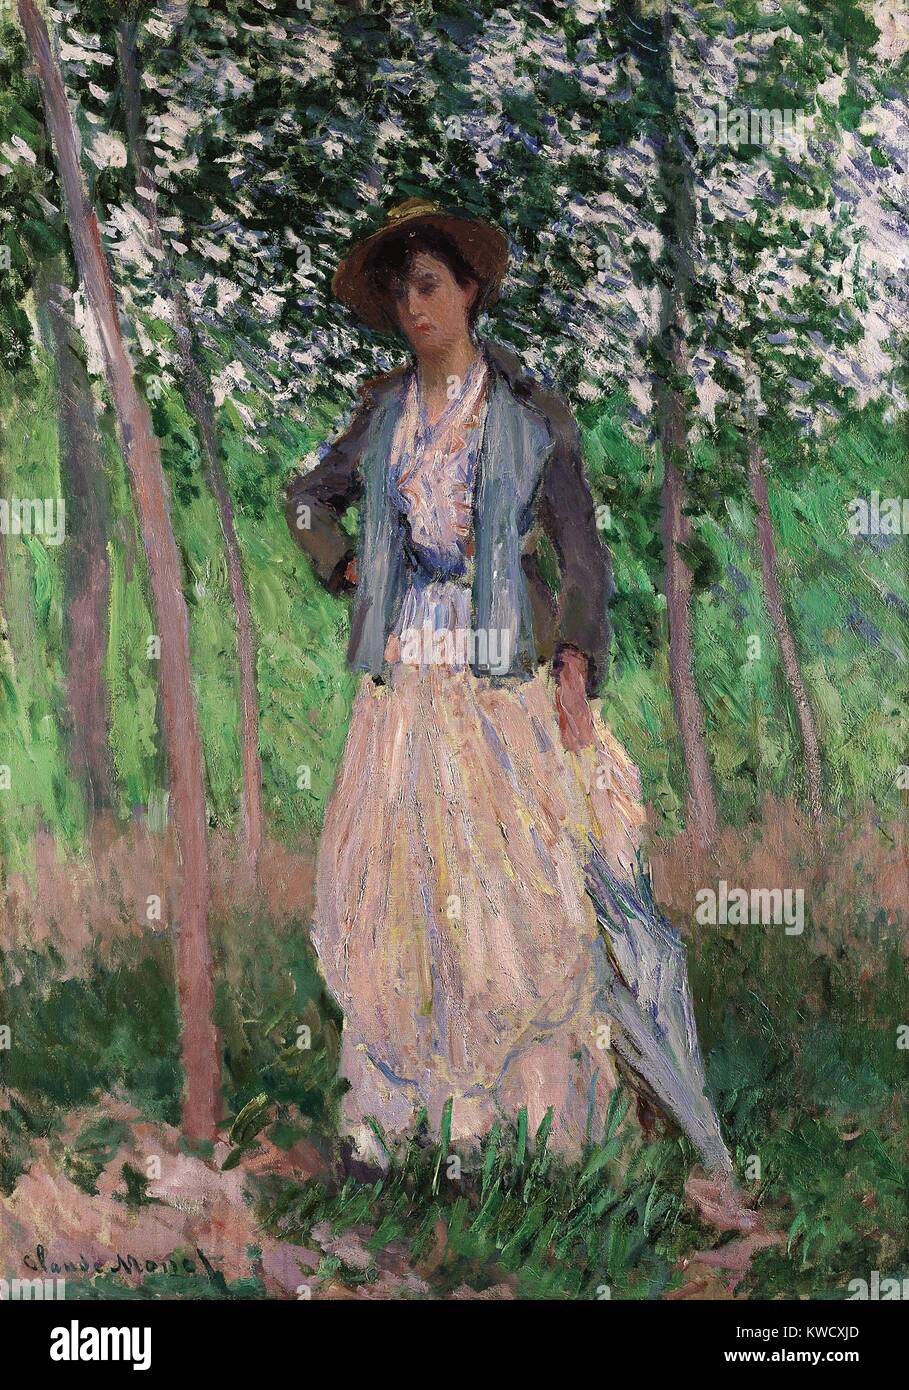 La poussette (Suzanne Hoschede) par Claude Monet, 1887, la peinture impressionniste français, huile sur toile. Suzanne était la fille de long temps de Monet, maîtresse Alice Hoschede, qu'il épousa en 1882 après son premier mari est mort (BSLOC 2017 3 39) Banque D'Images